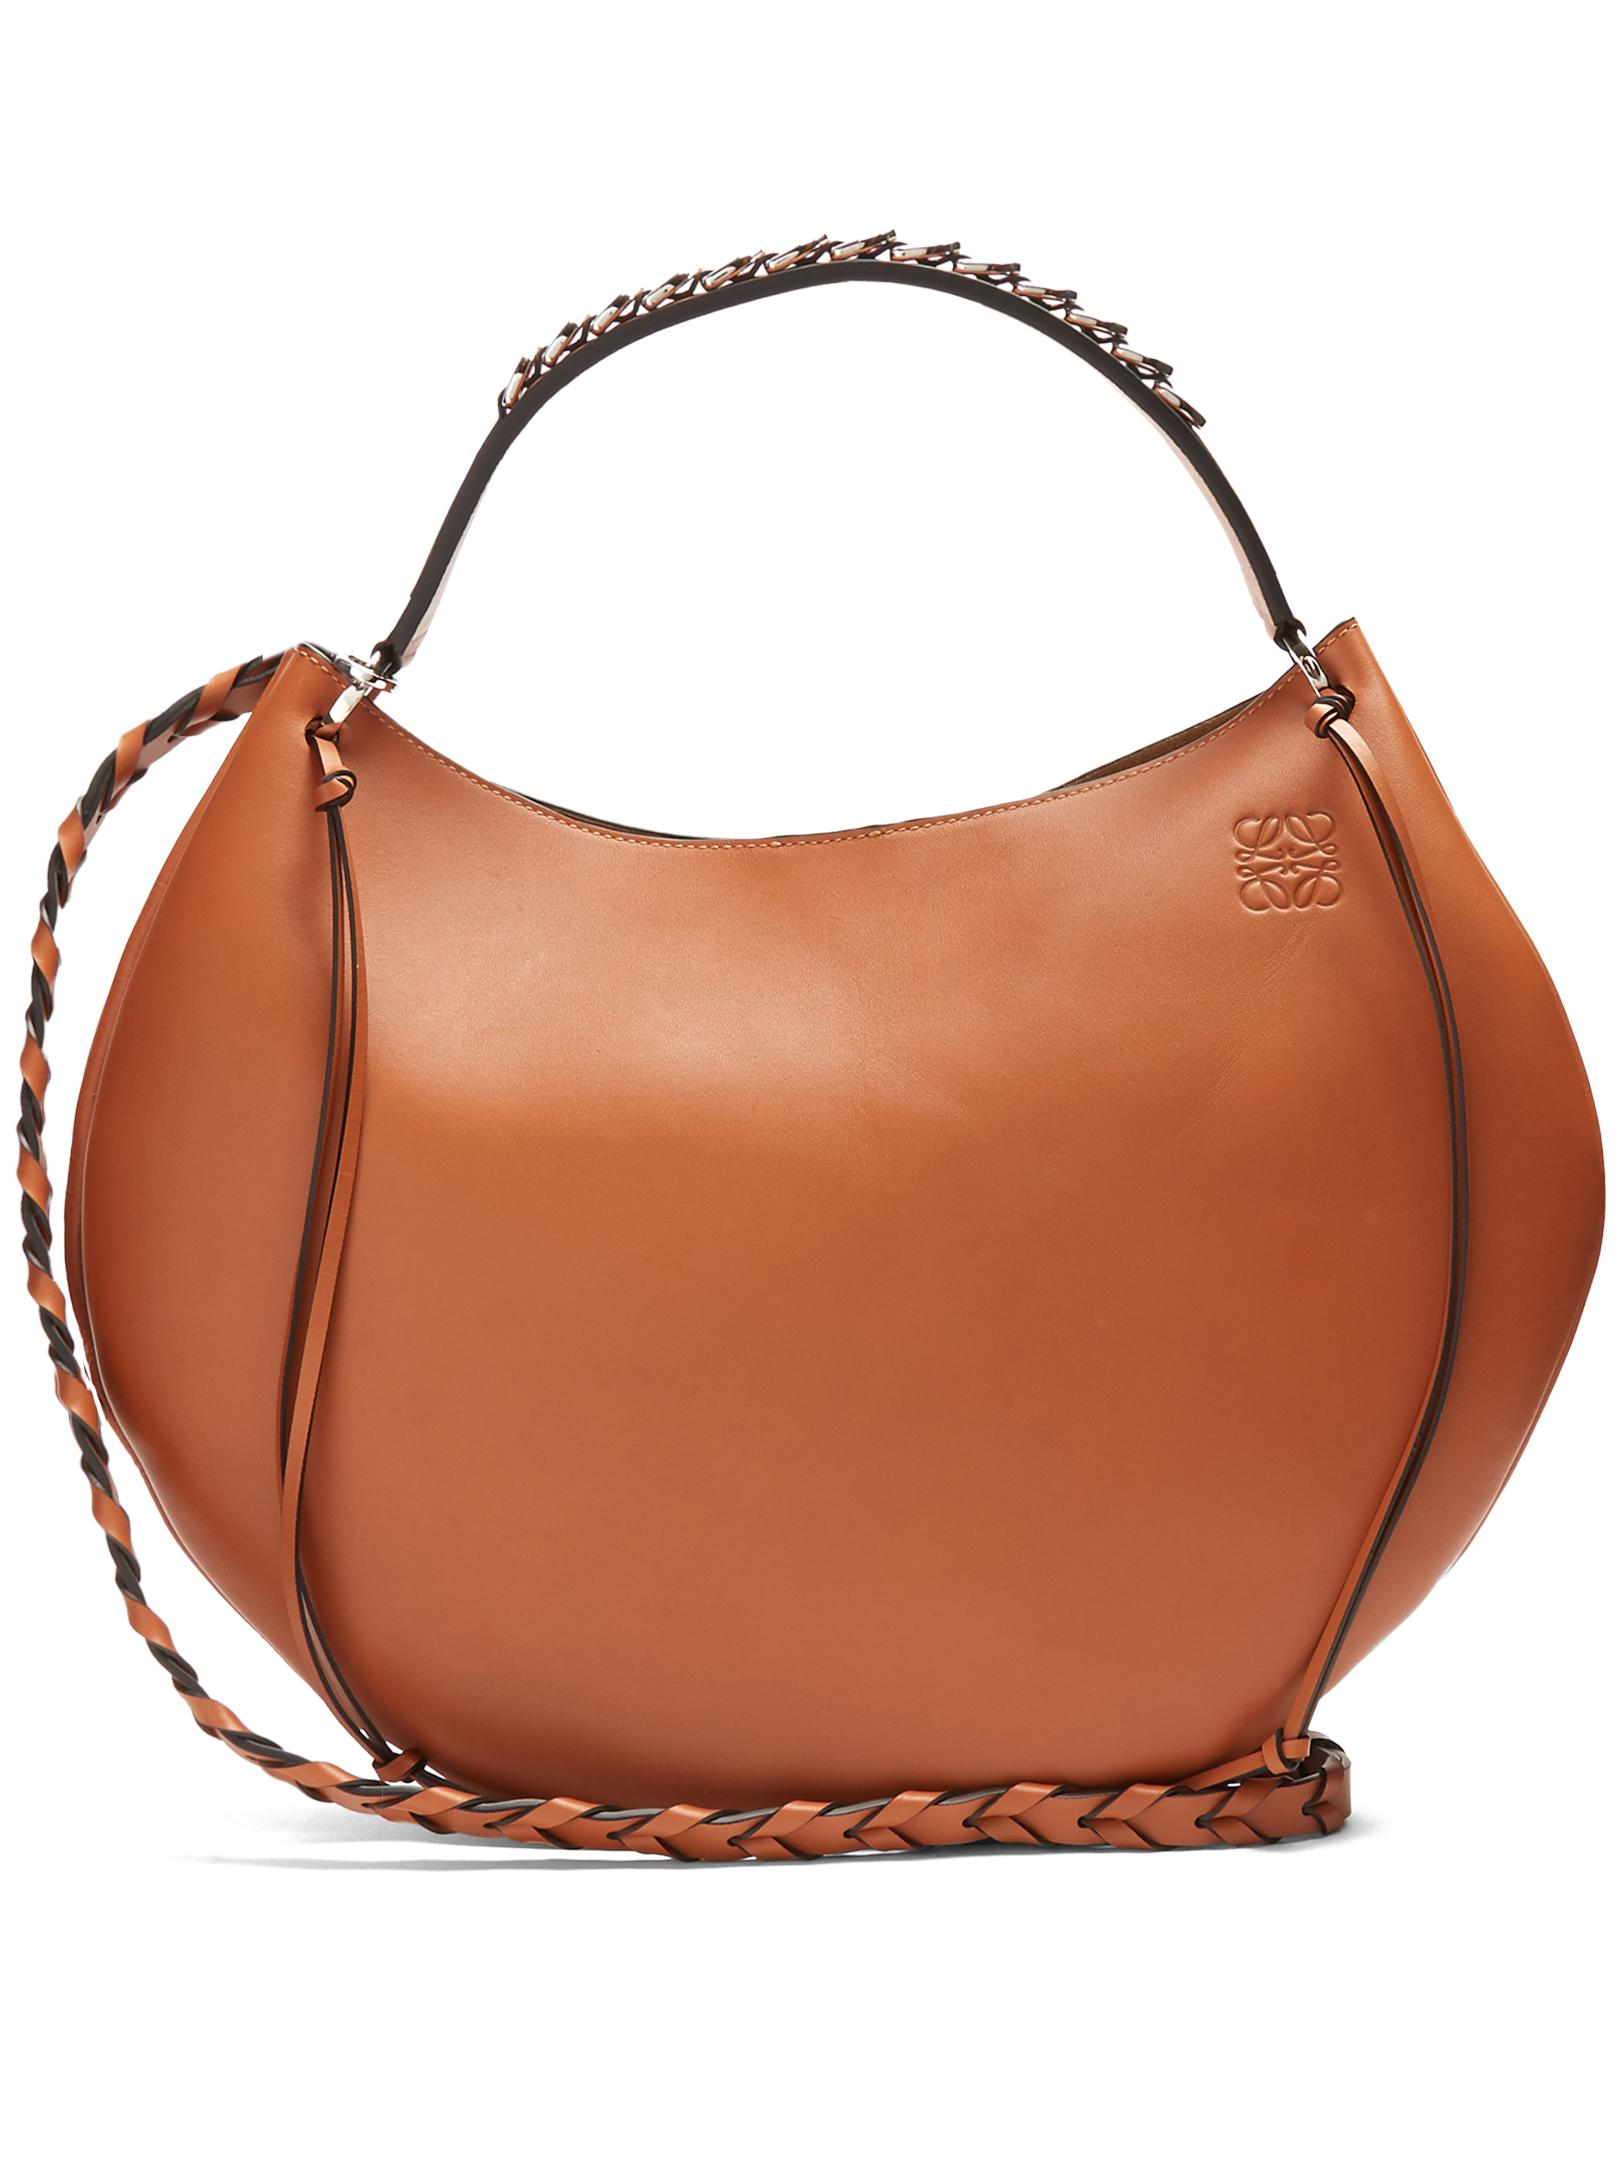 Loewe Fortune Leather Shoulder Bag in Brown - Lyst